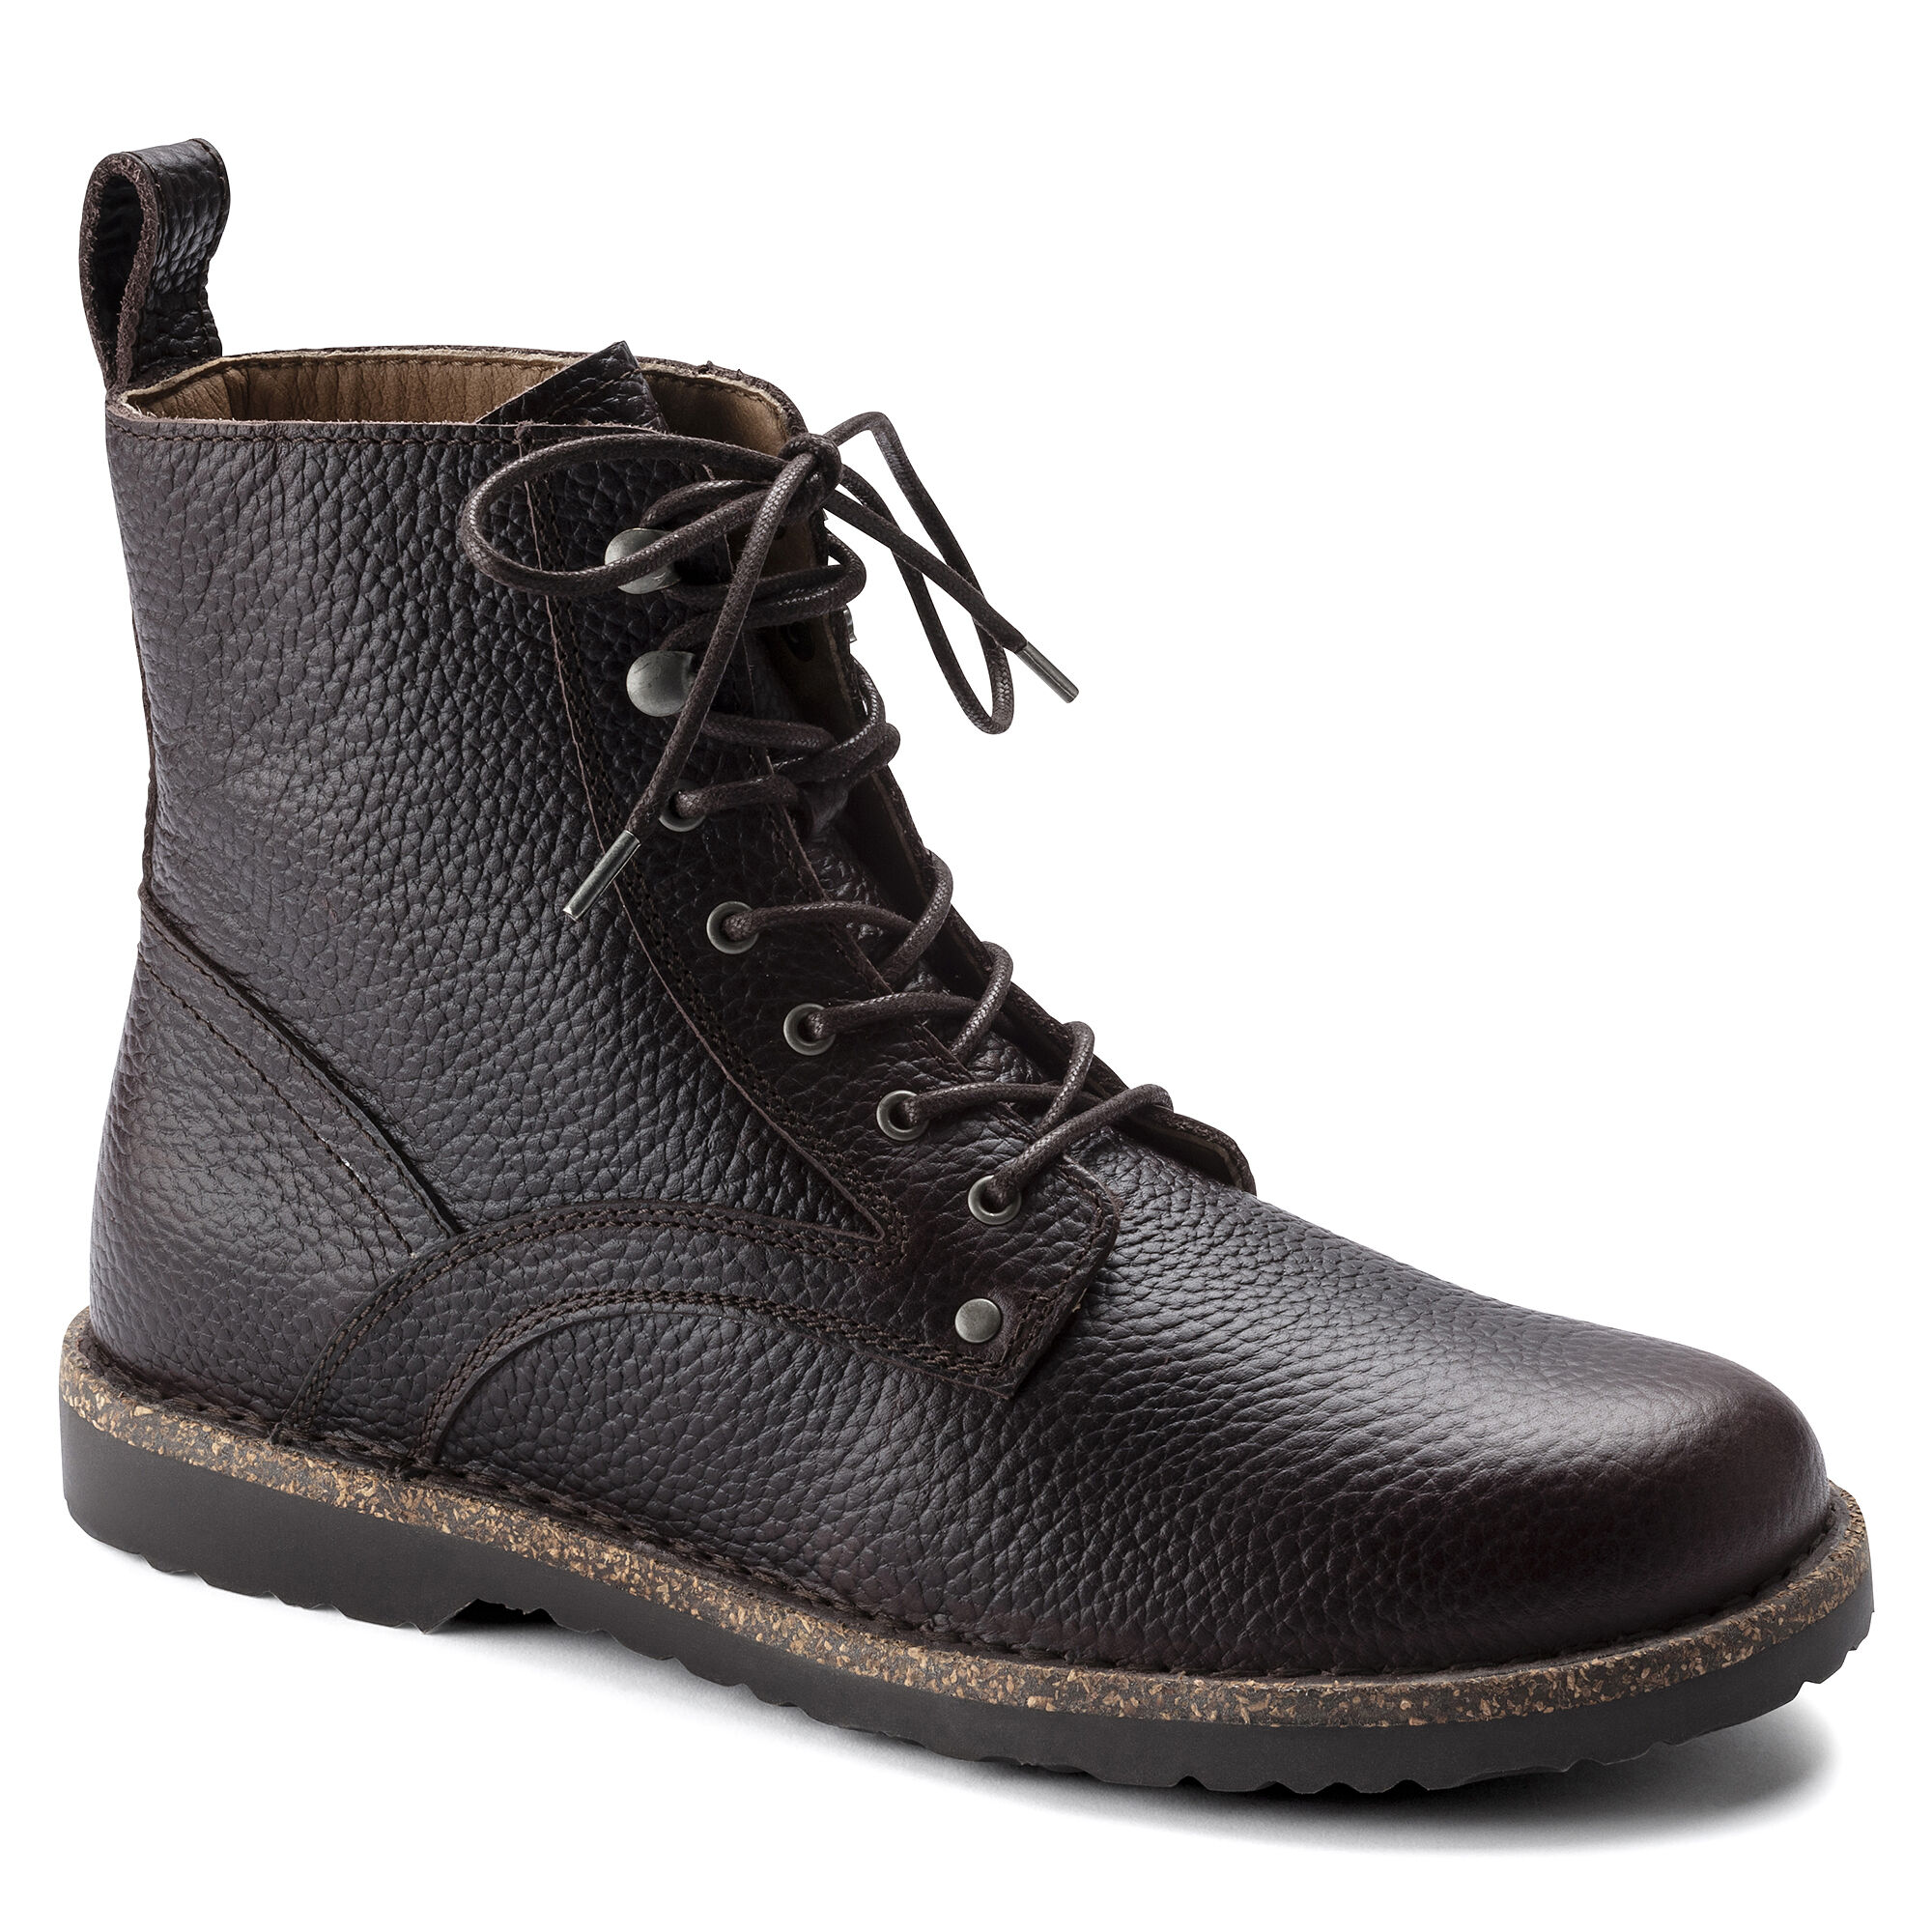 Men's boots | buy online at BIRKENSTOCK